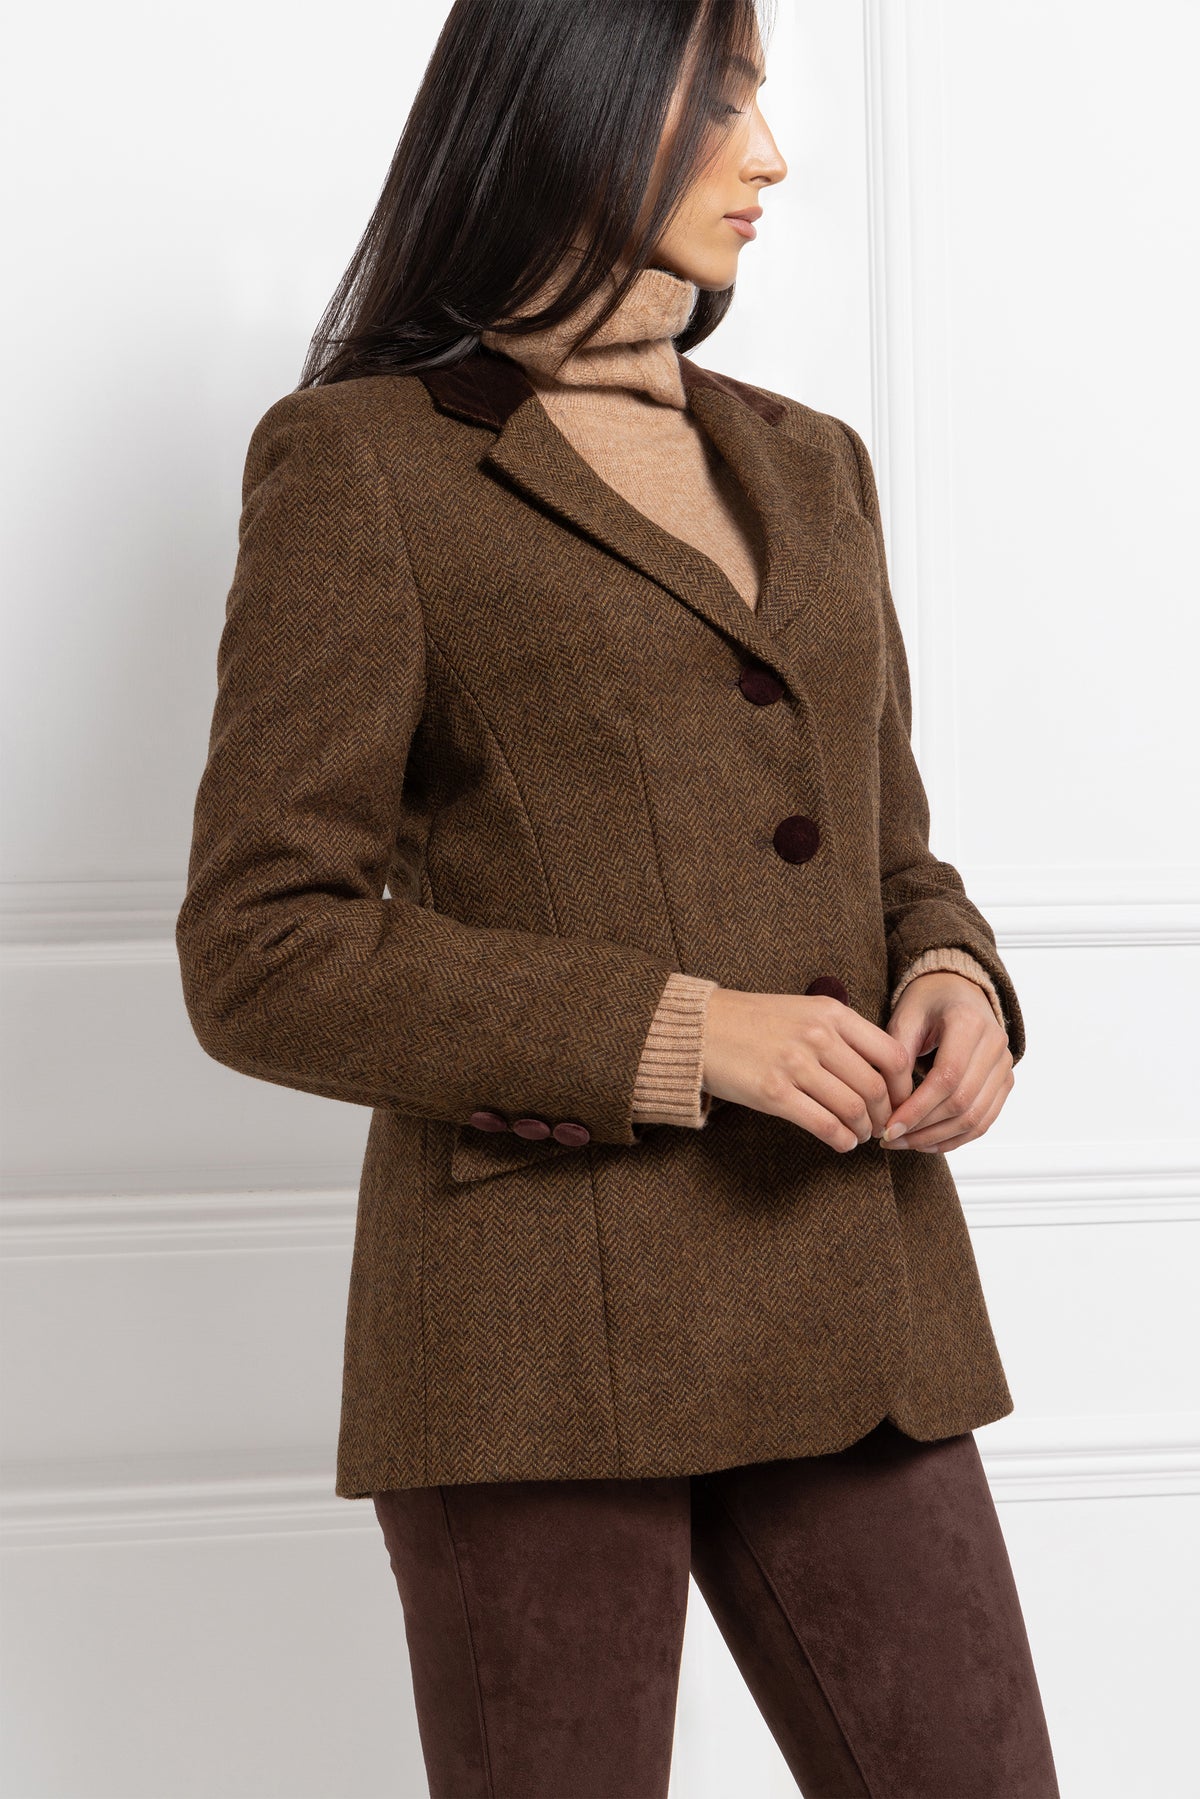 Lauren Ralph Lauren Jackets & Coats | Lauren Ralph Lauren Wool Tweed Brown Blazer Size 8 | Color: Brown | Size: 8 | Kmresale's Closet